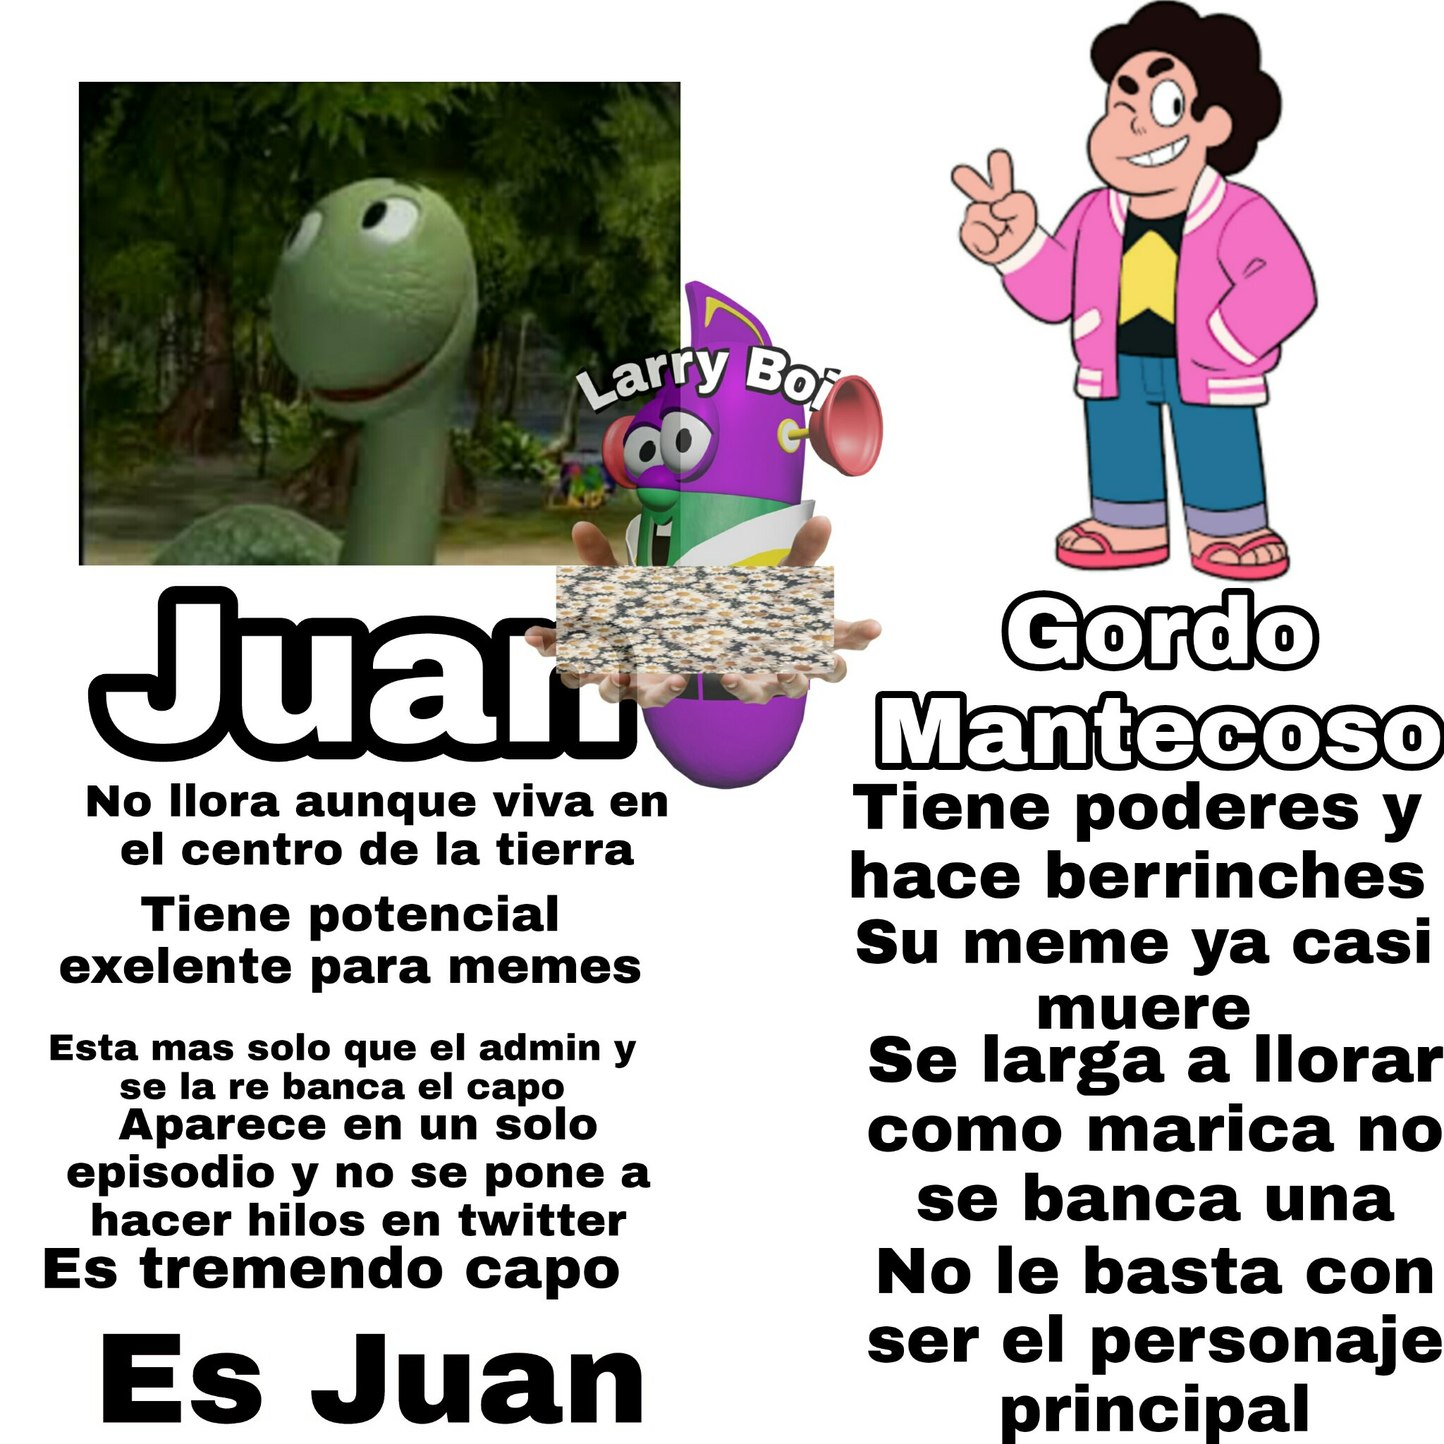 Grande Juan - meme